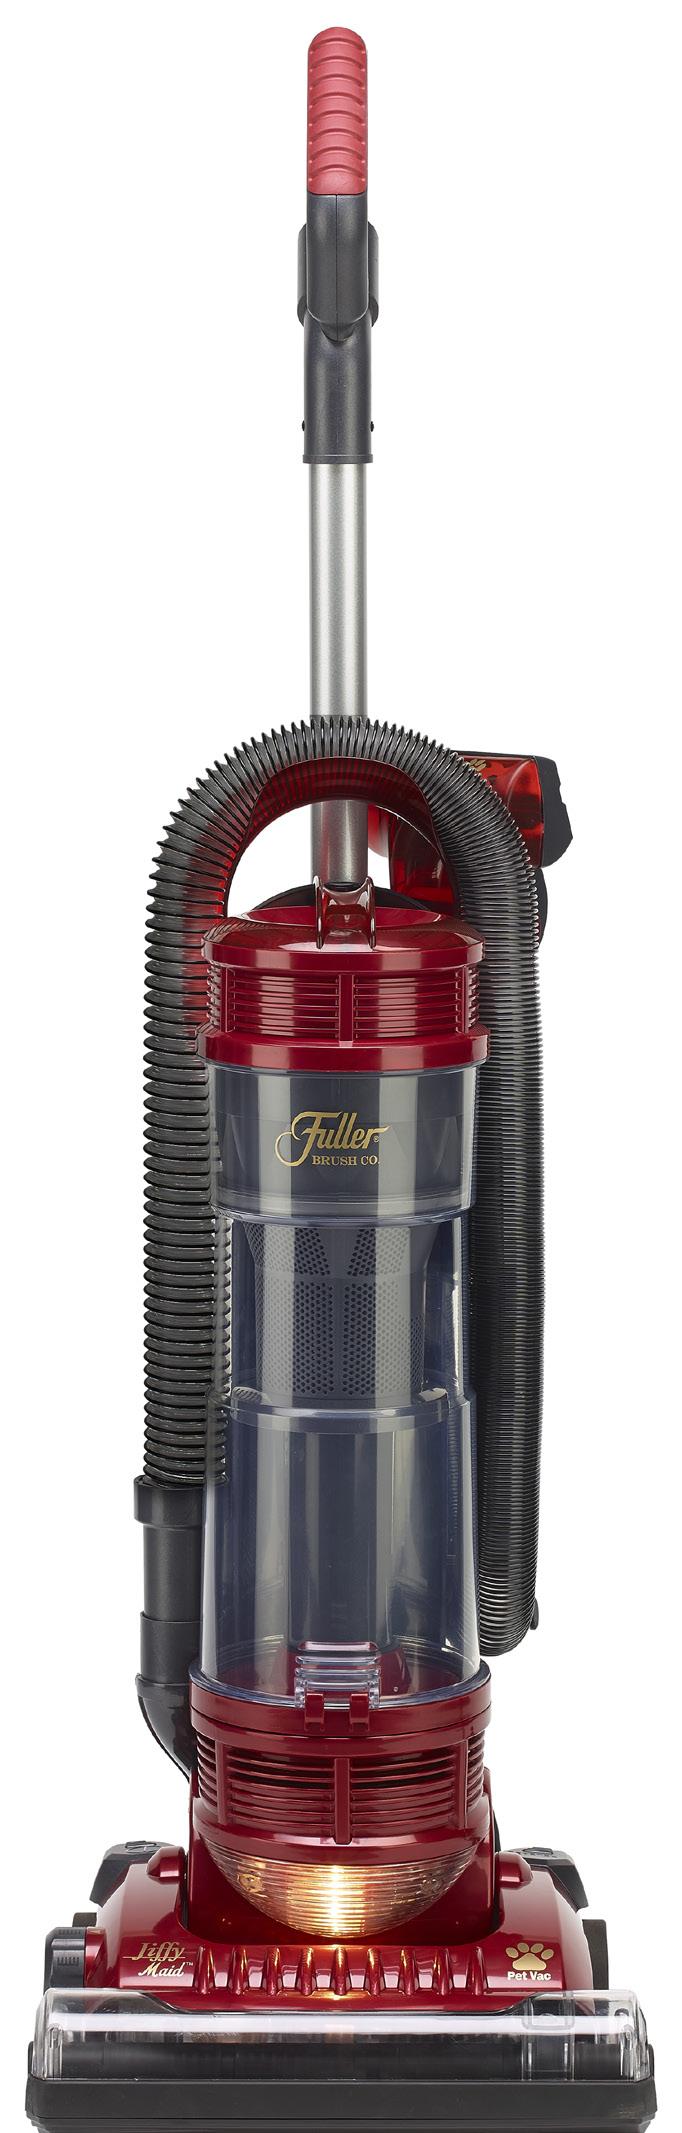 Fuller Brush Upright Vacuum.